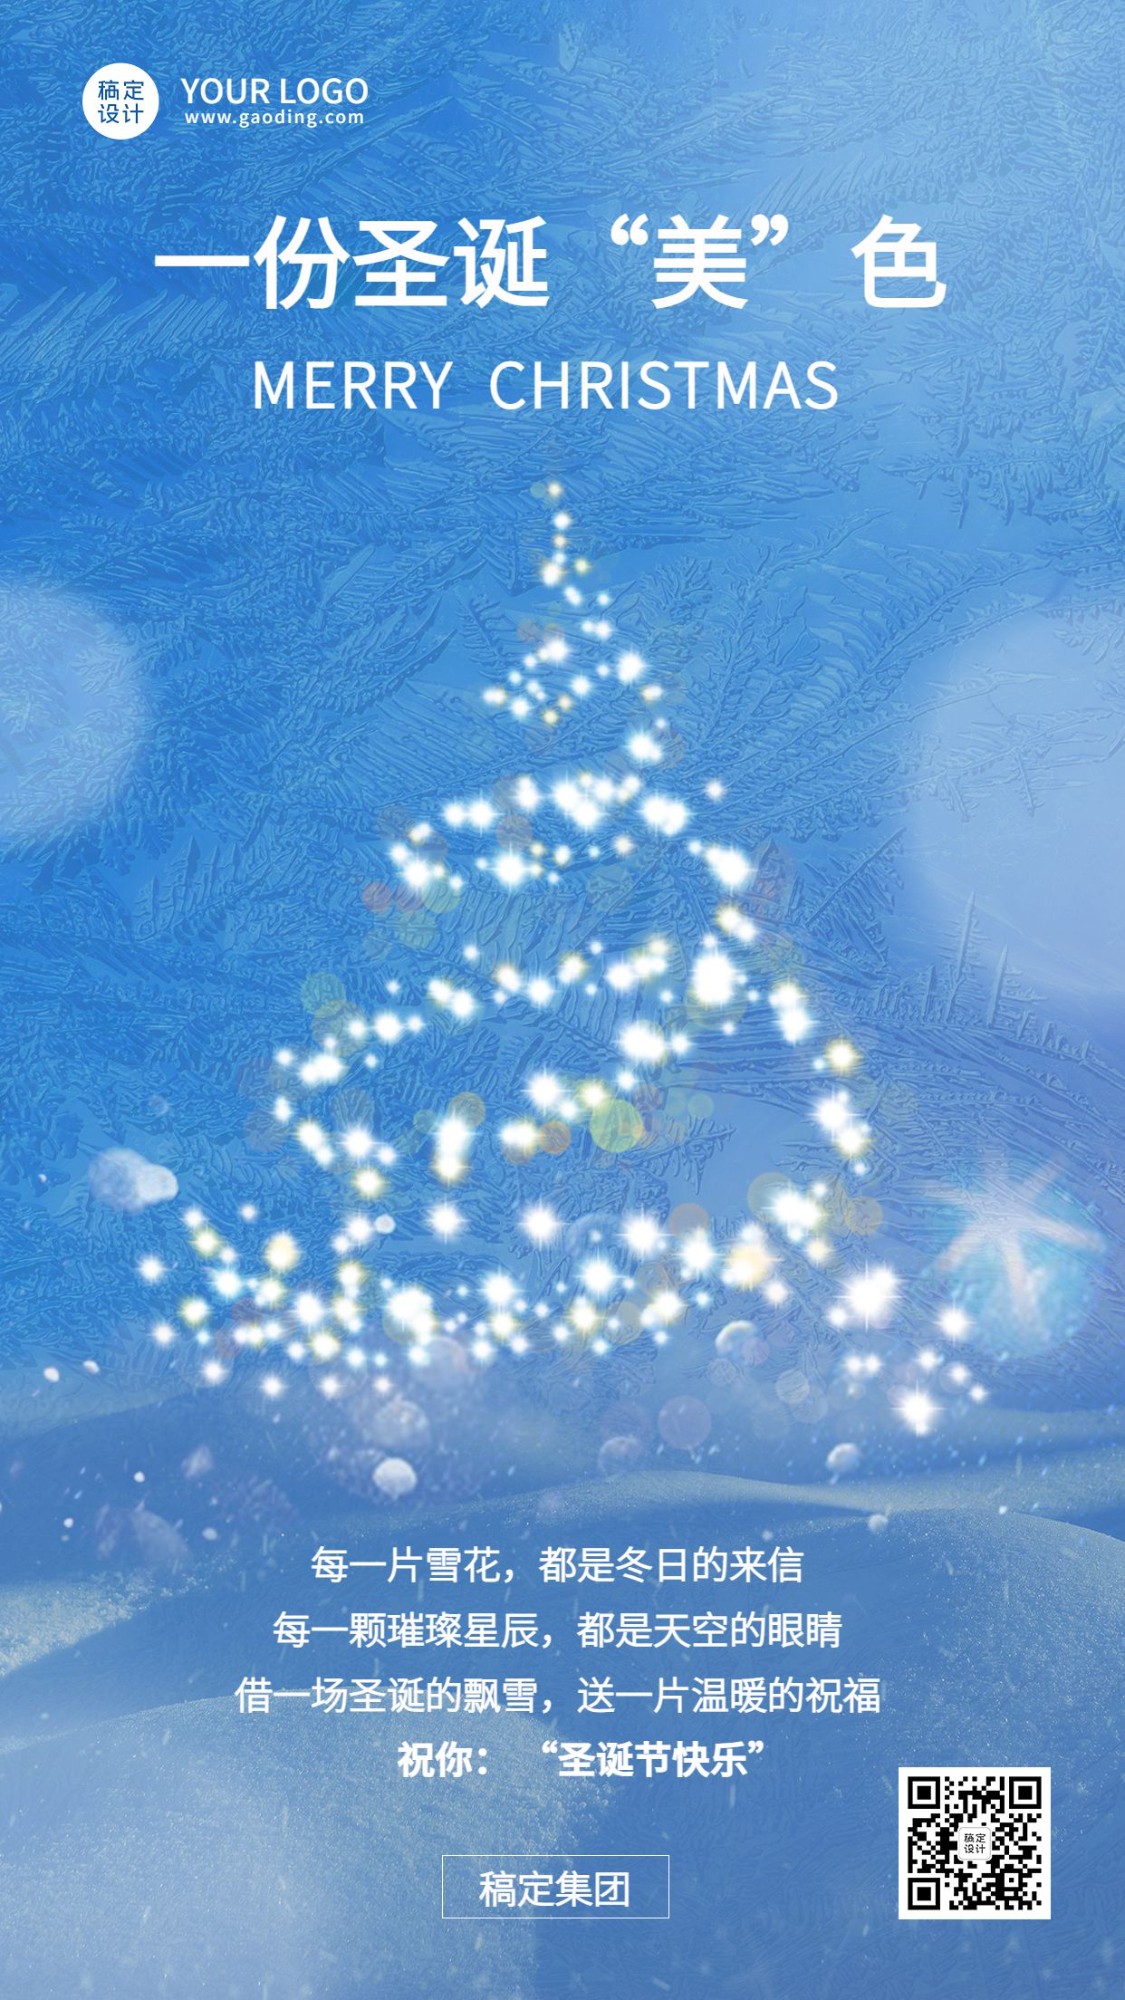 圣诞节企业祝福贺卡简约实景合成贺卡手机海报预览效果